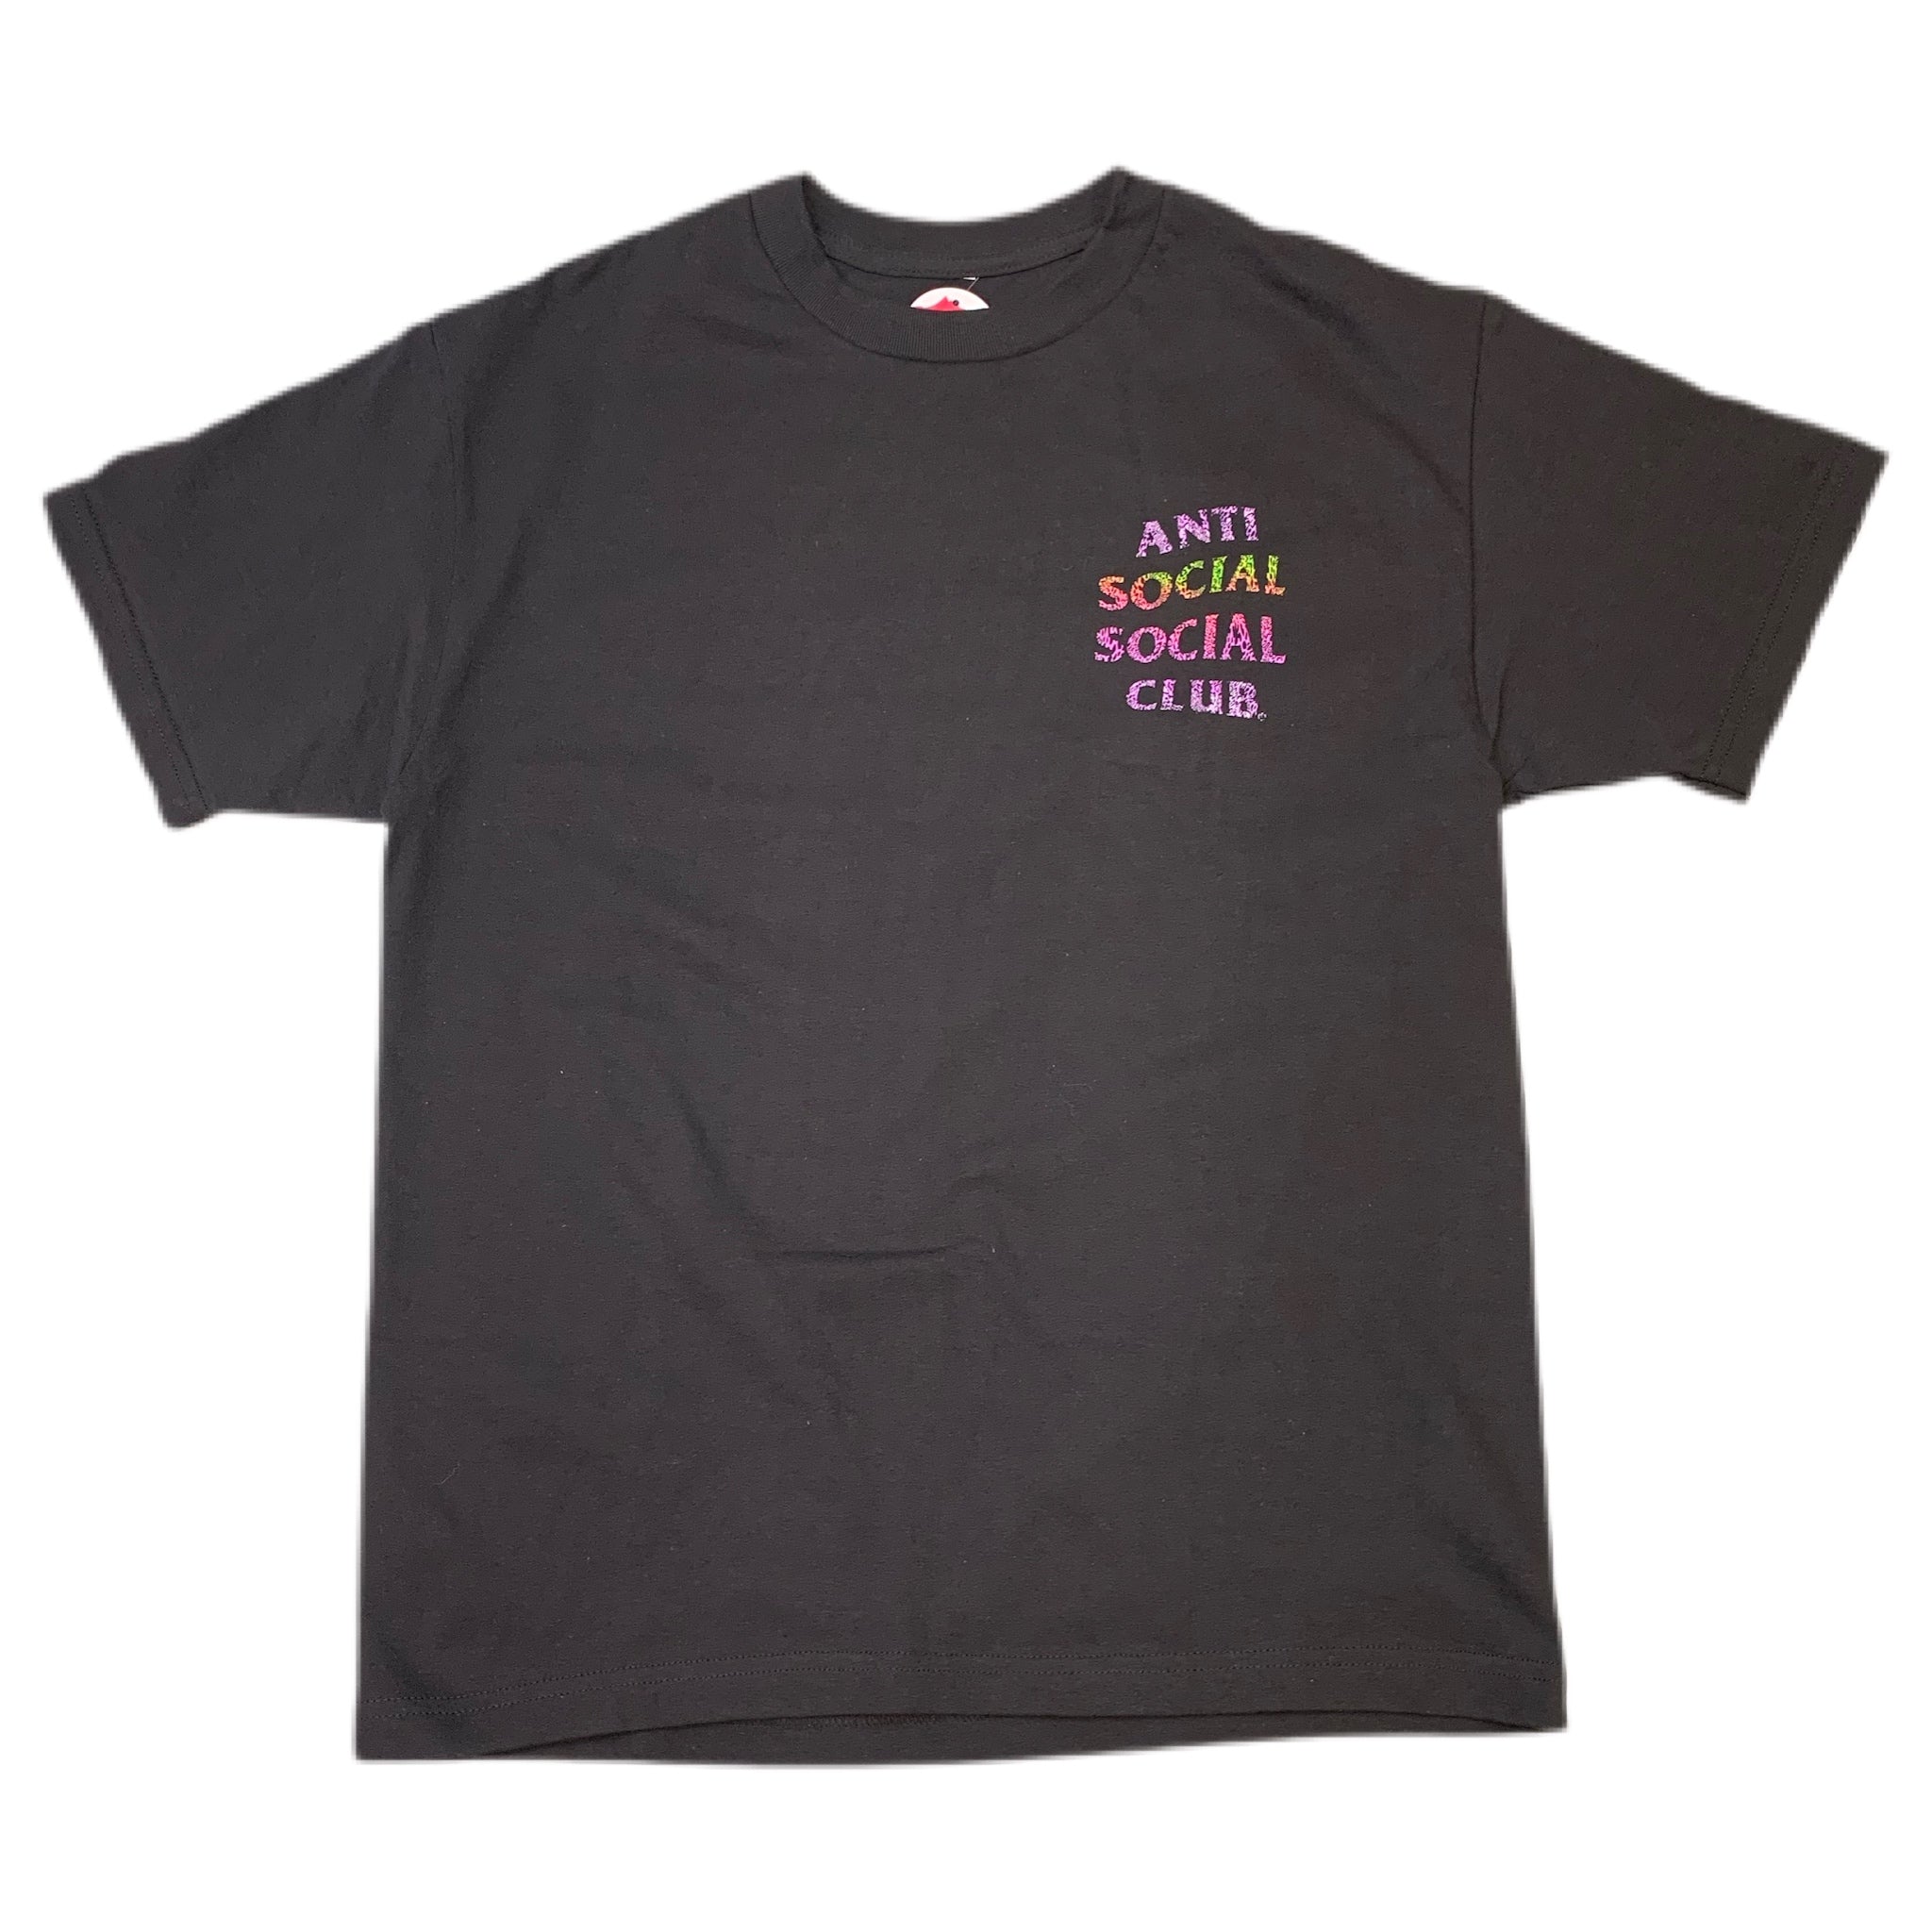 Anti Social Social Club "ASSCLUBTRONIC" Shirt Black - Black Graphic Shirt